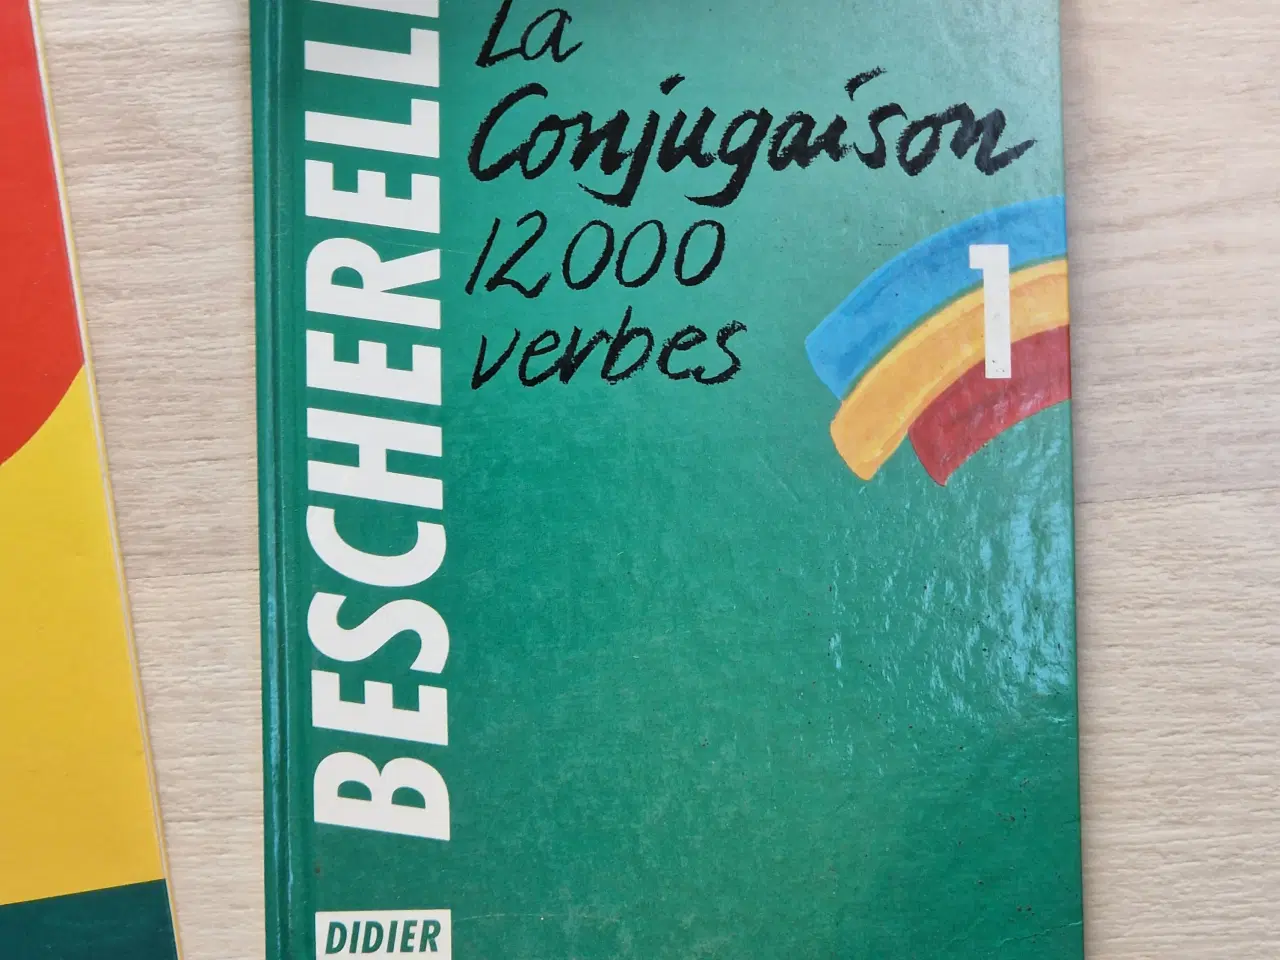 Billede 5 - Franske ordbøger